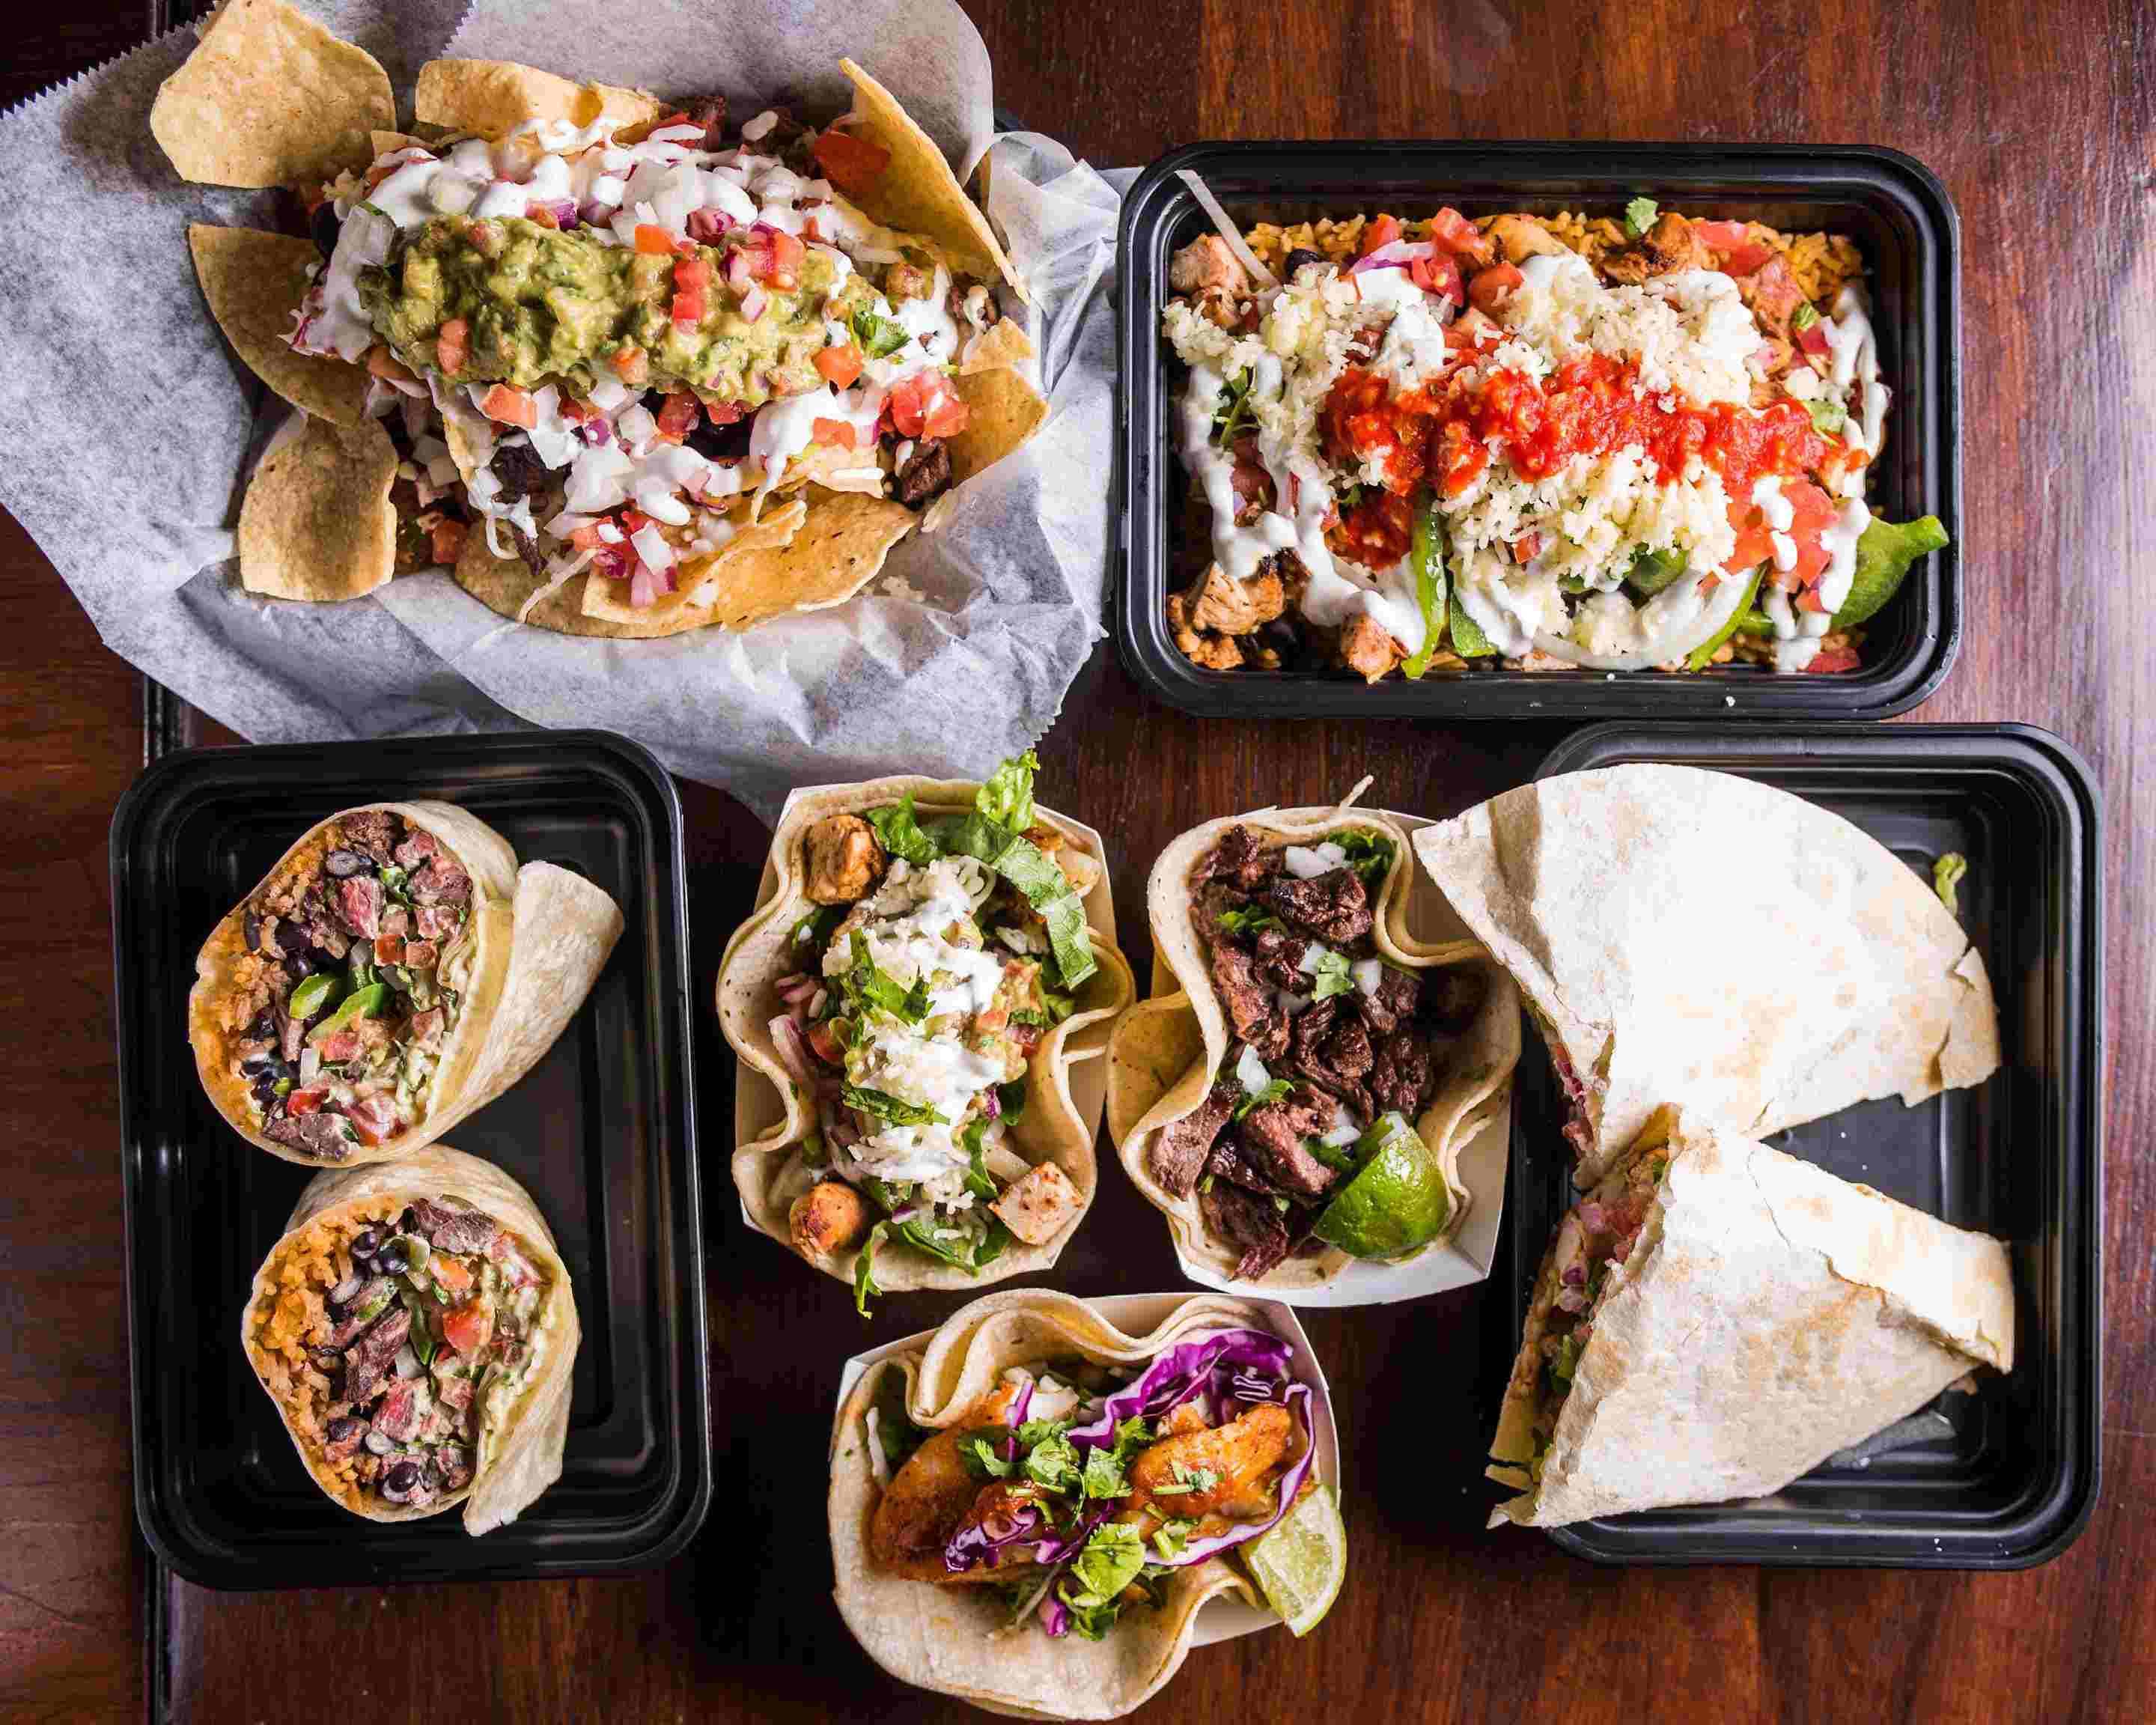 Cilantro's Mexican Restaurant Delivery Menu, Order Online